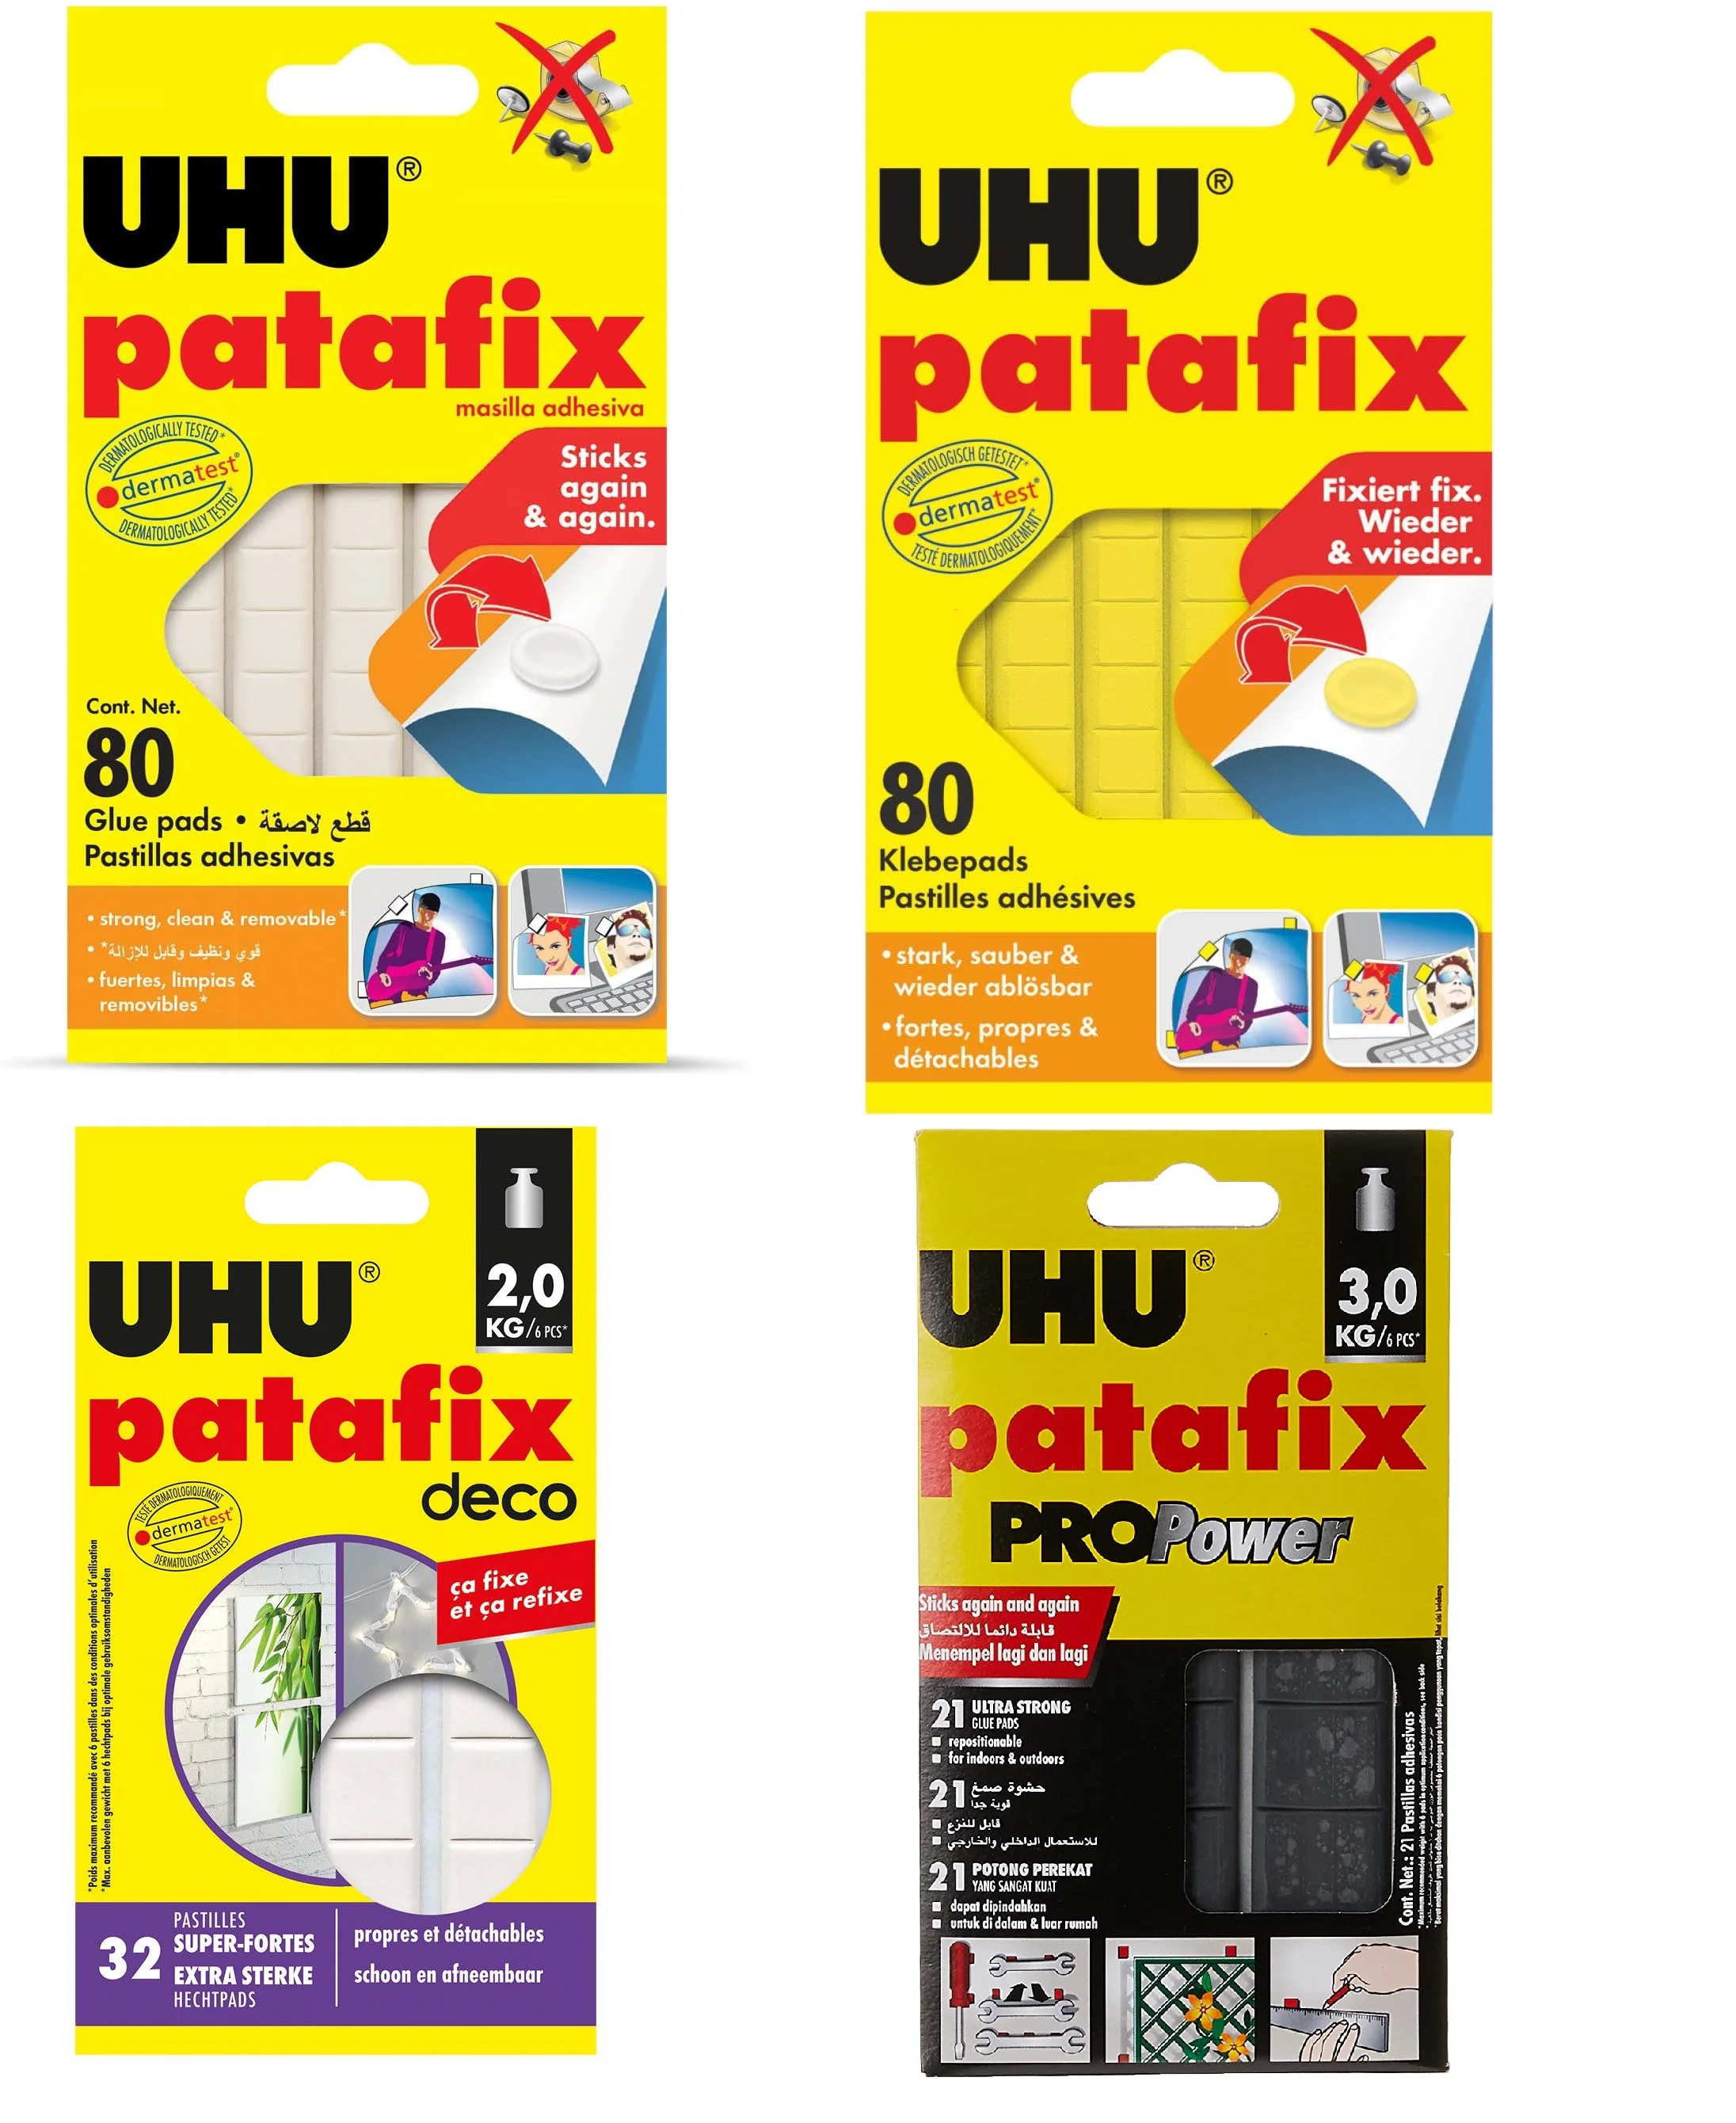 UHU Patafix Glue Pads Patafix Pro Power, Patafix Deco, Patafix Yellow Sticks Again and Again